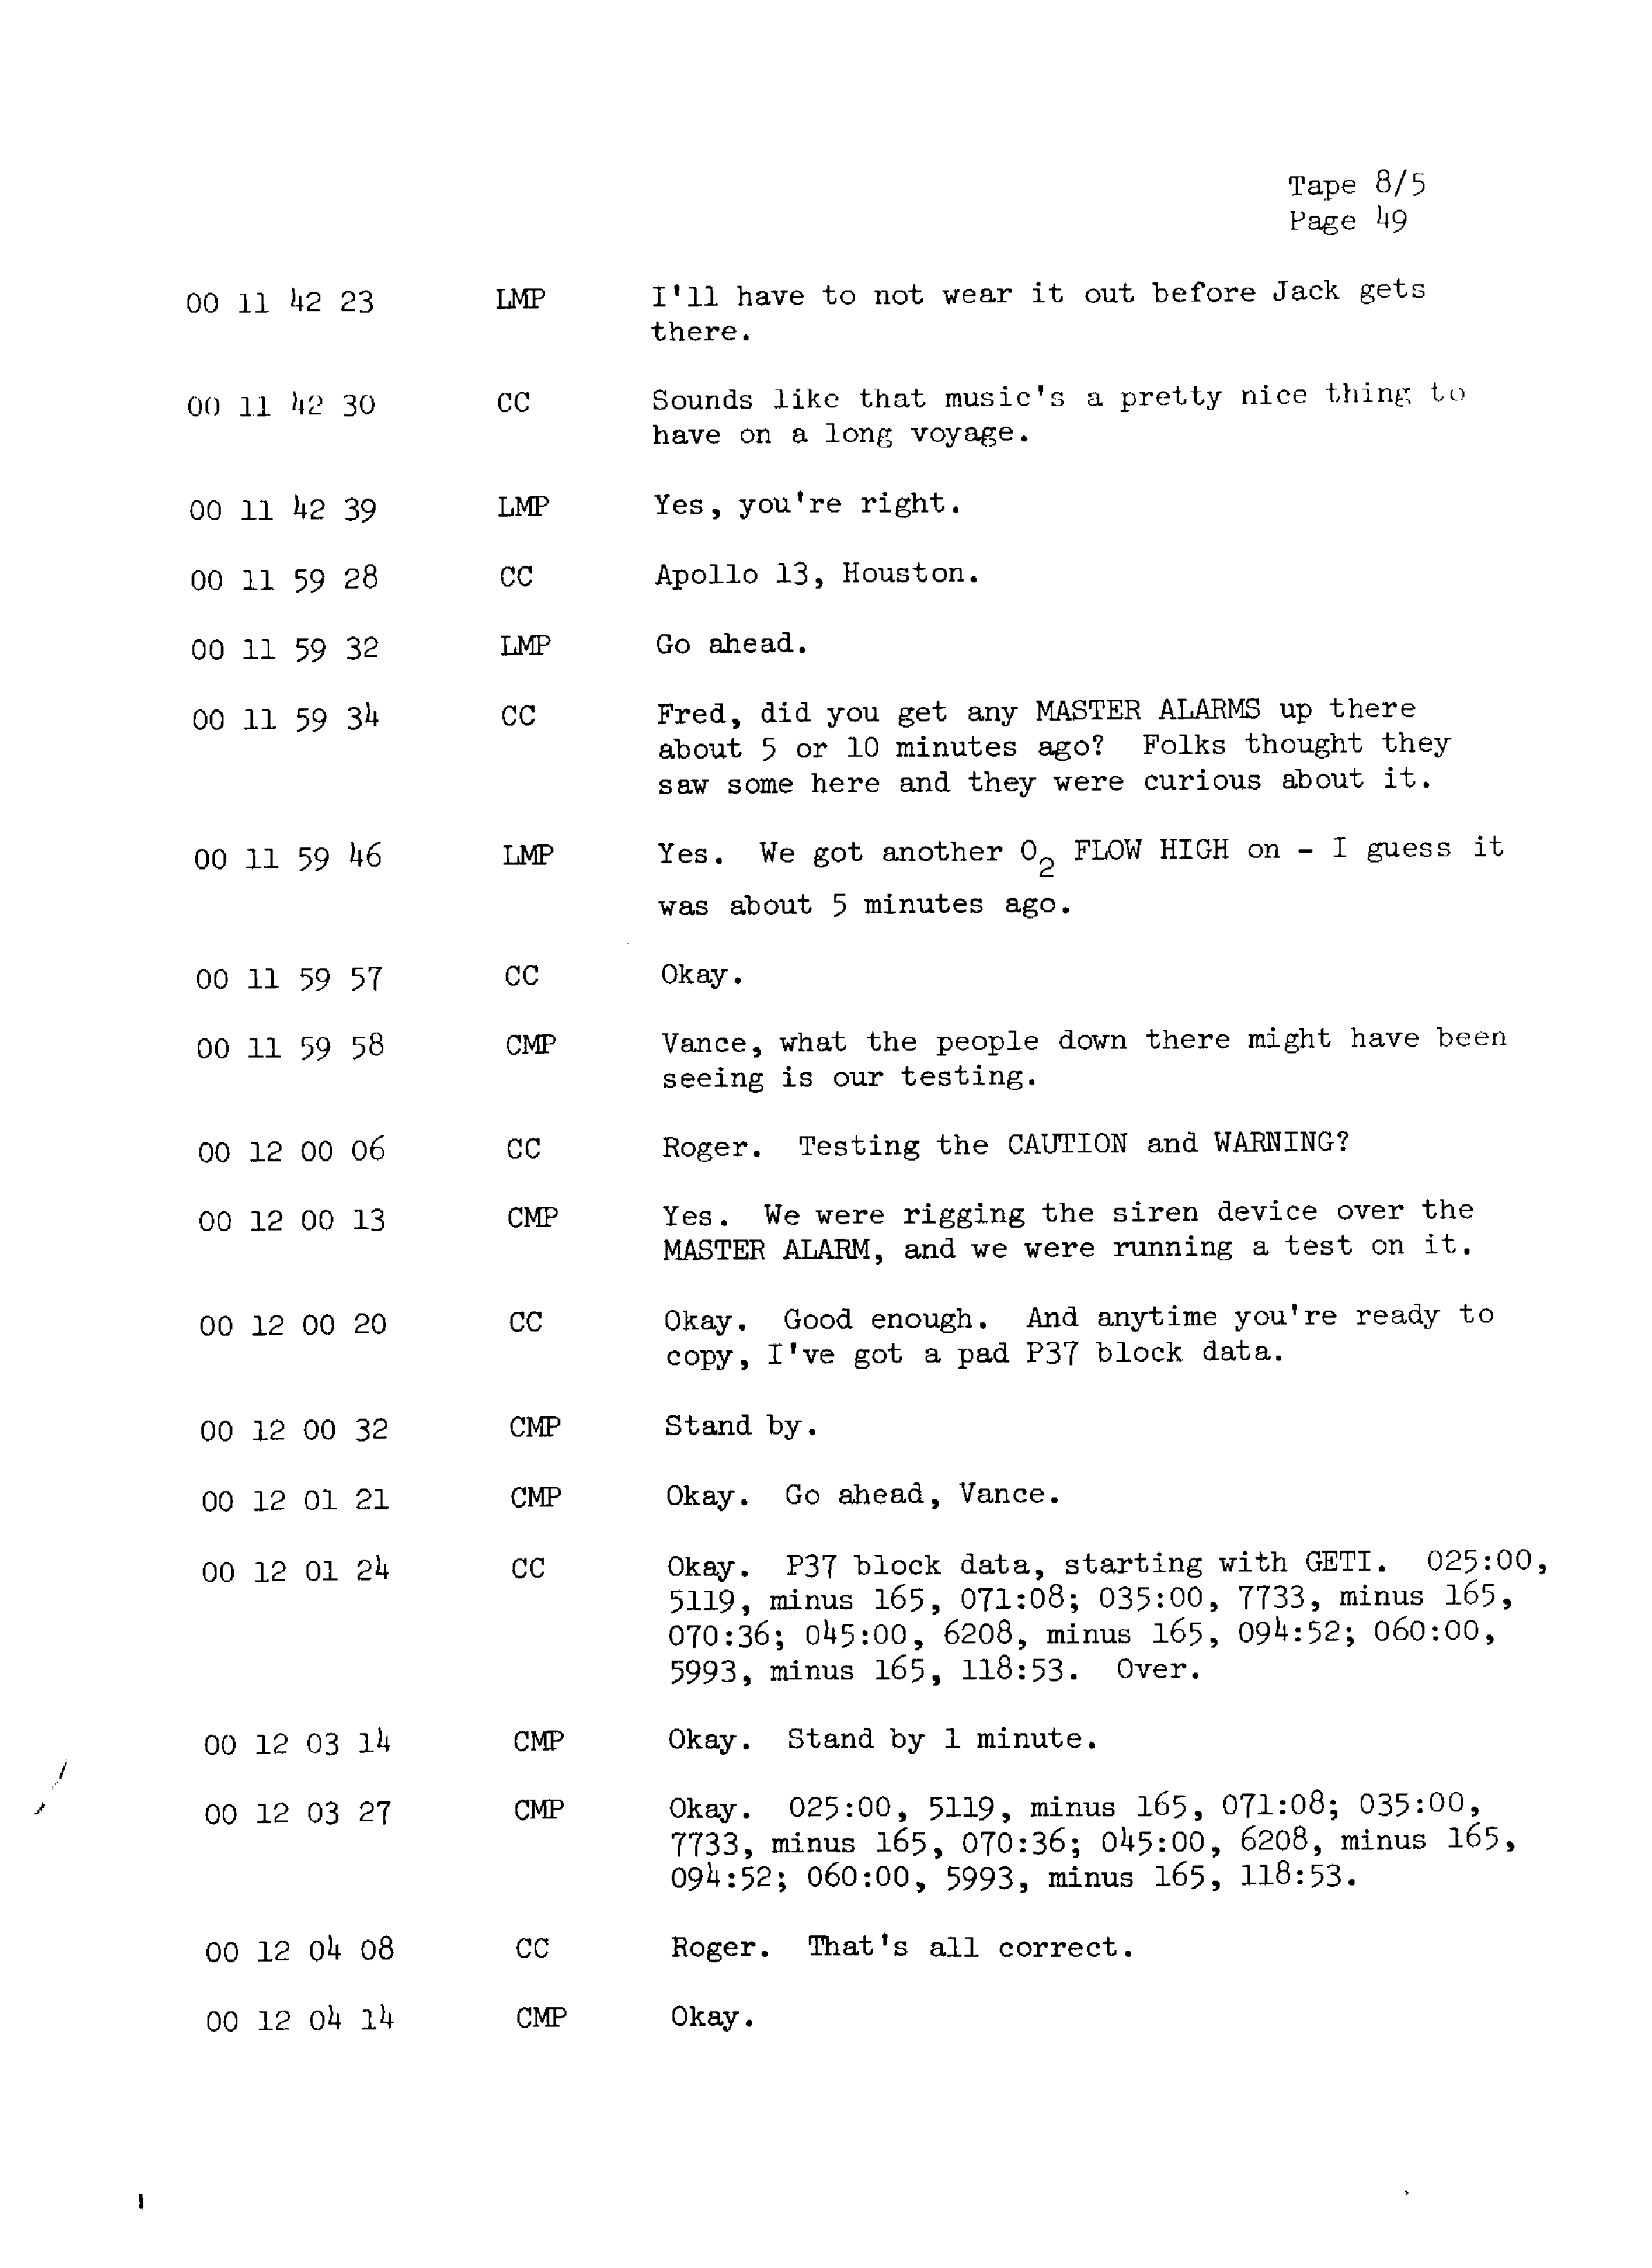 Page 56 of Apollo 13’s original transcript